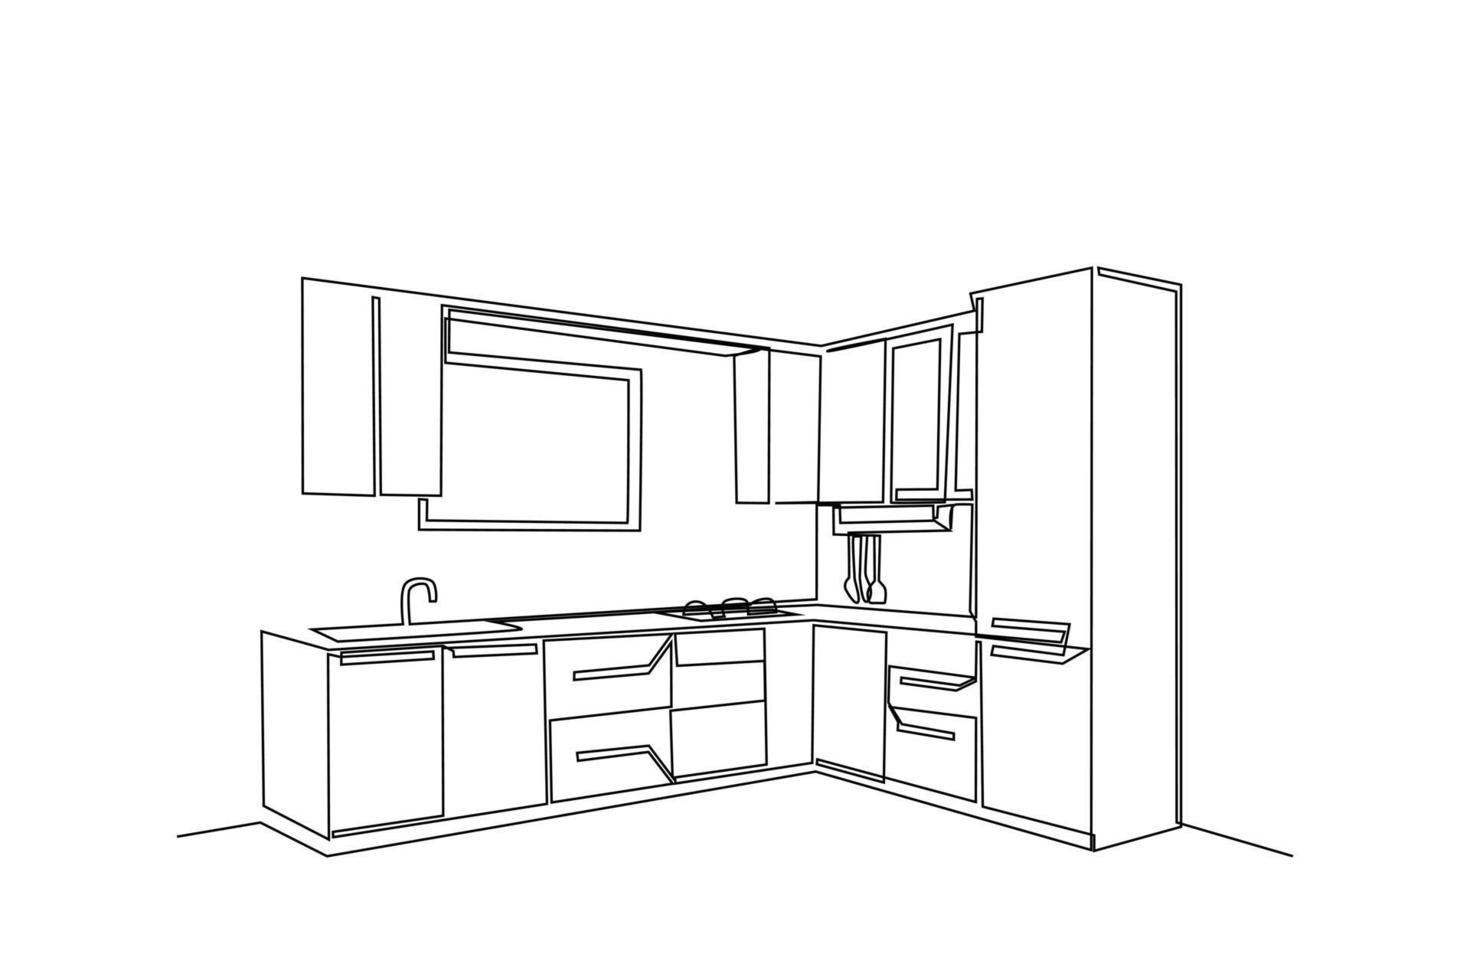 Single einer Linie Zeichnung modern Küche Innere. Küche Zimmer Konzept. kontinuierlich Linie zeichnen Design Grafik Vektor Illustration.